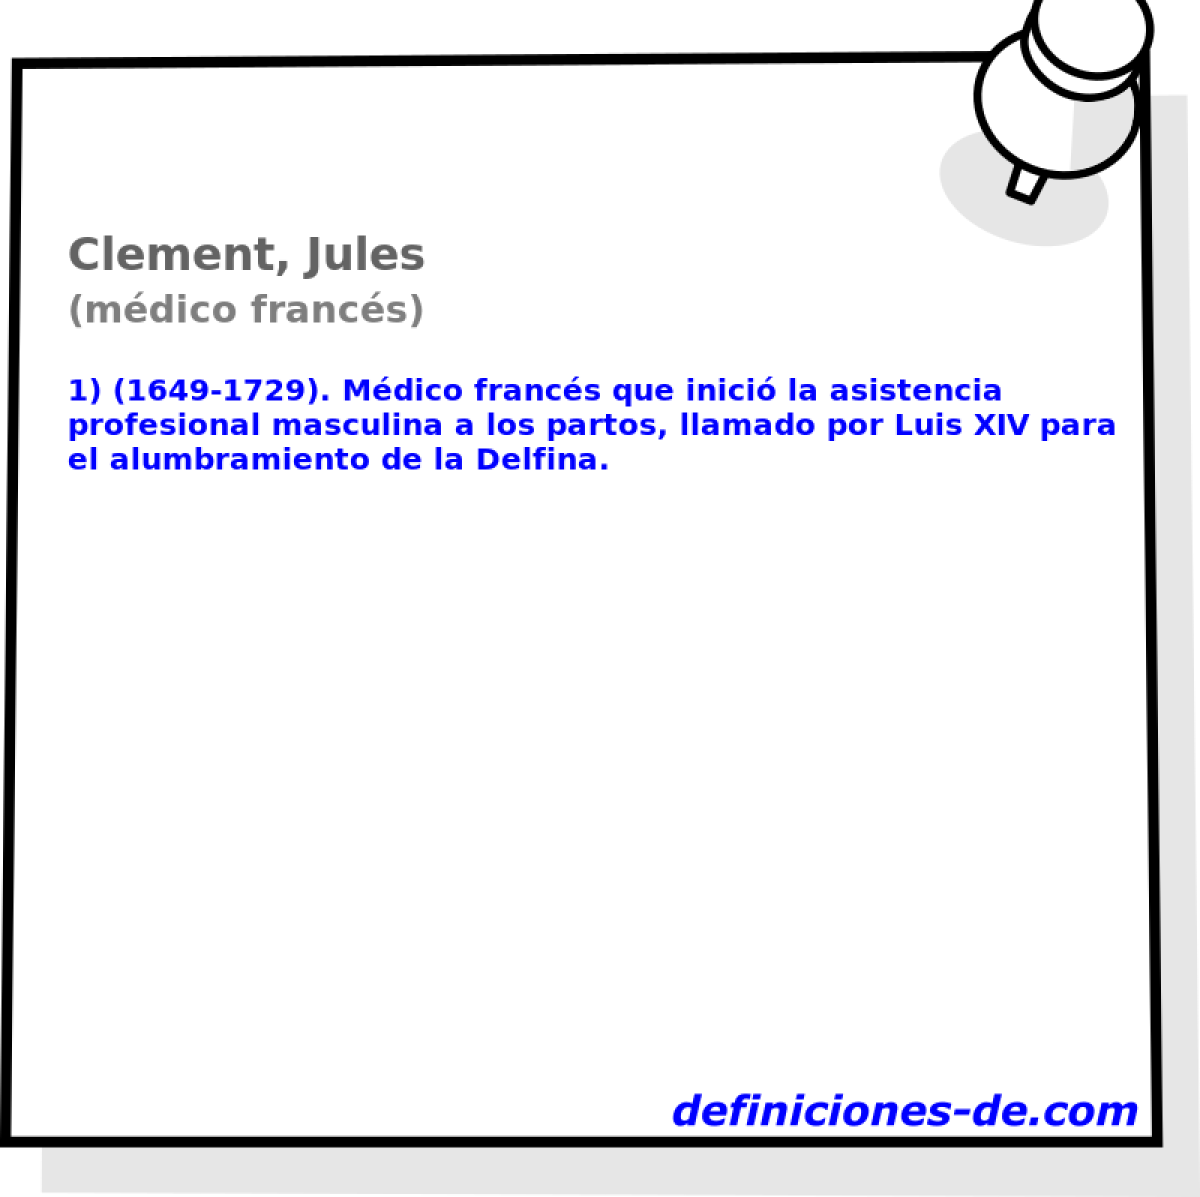 Clement, Jules (mdico francs)